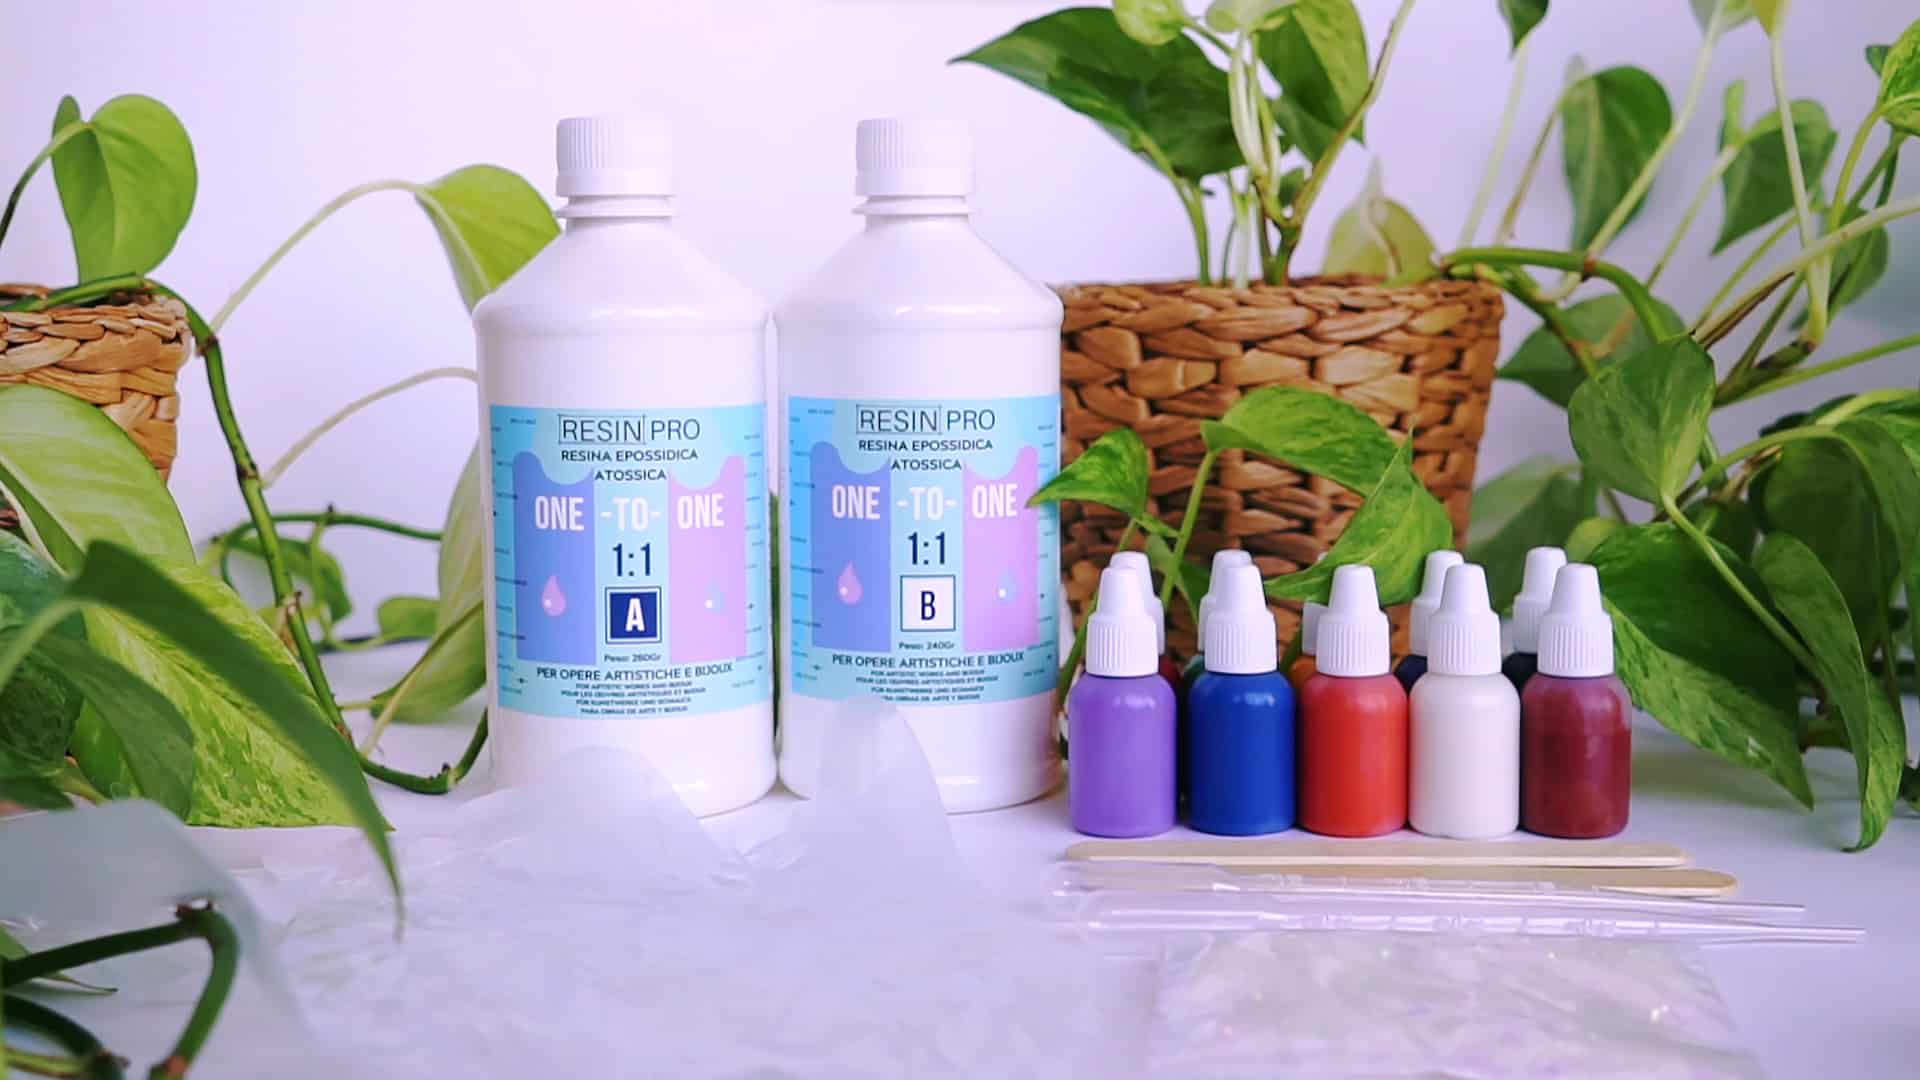 Mica Powder Pigment 12 Colors / Bottle Epoxy Resin Soap Dye - Temu